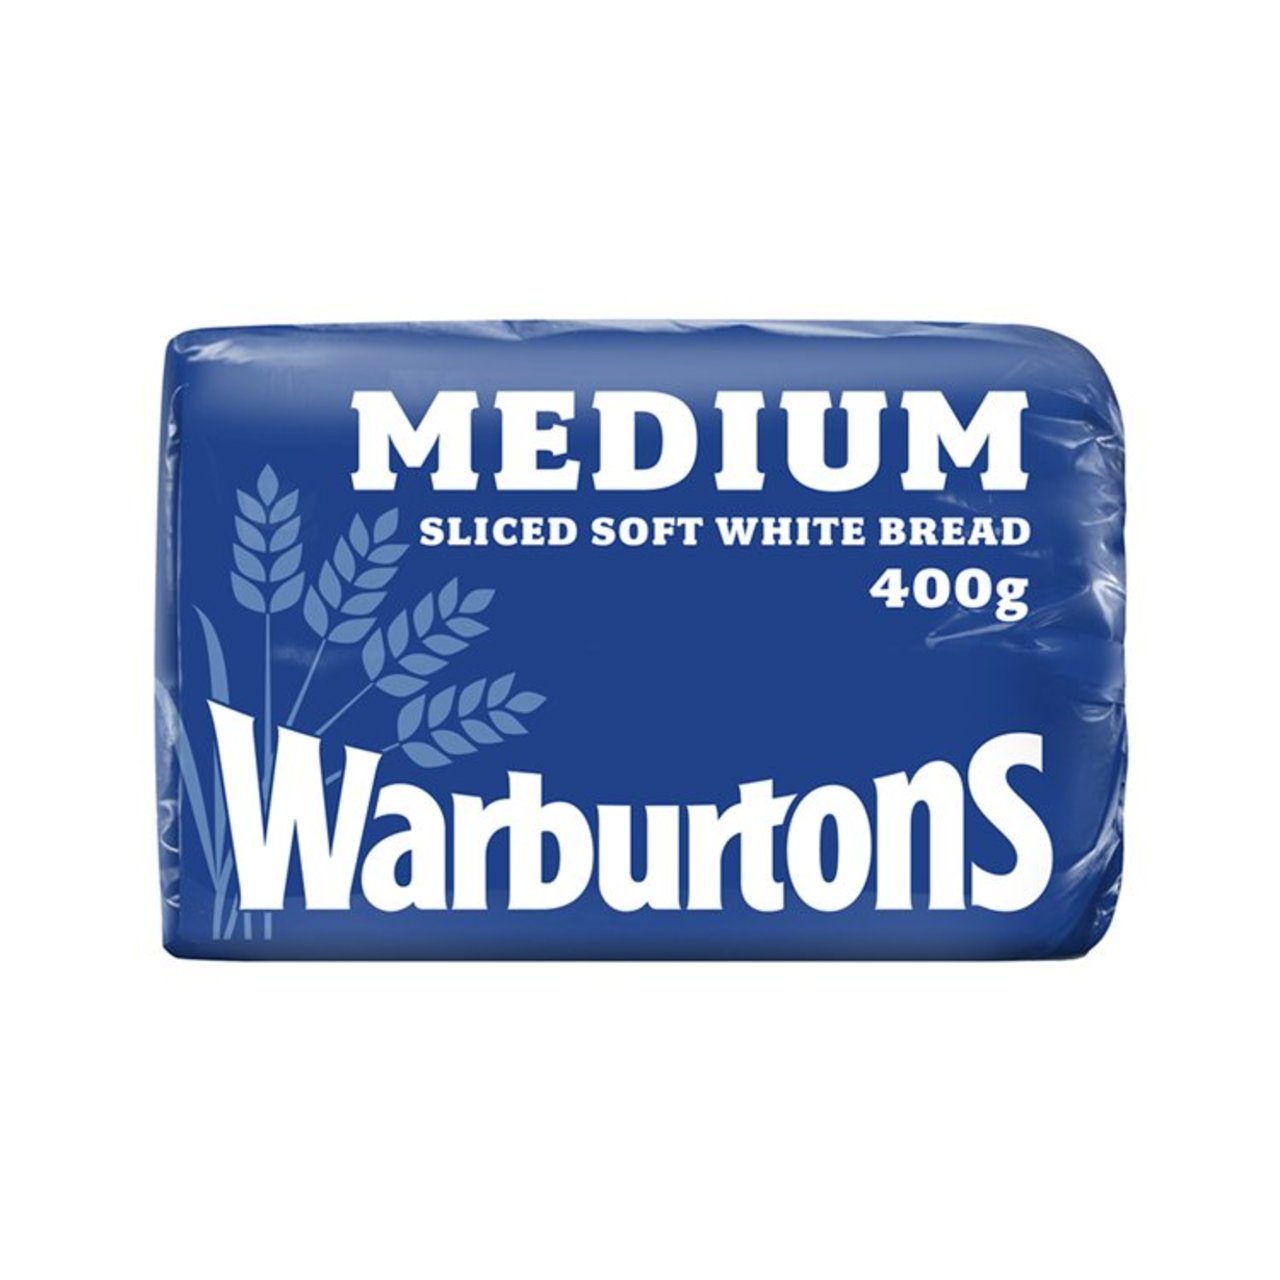 Warburtons 400g Medium White Loaf